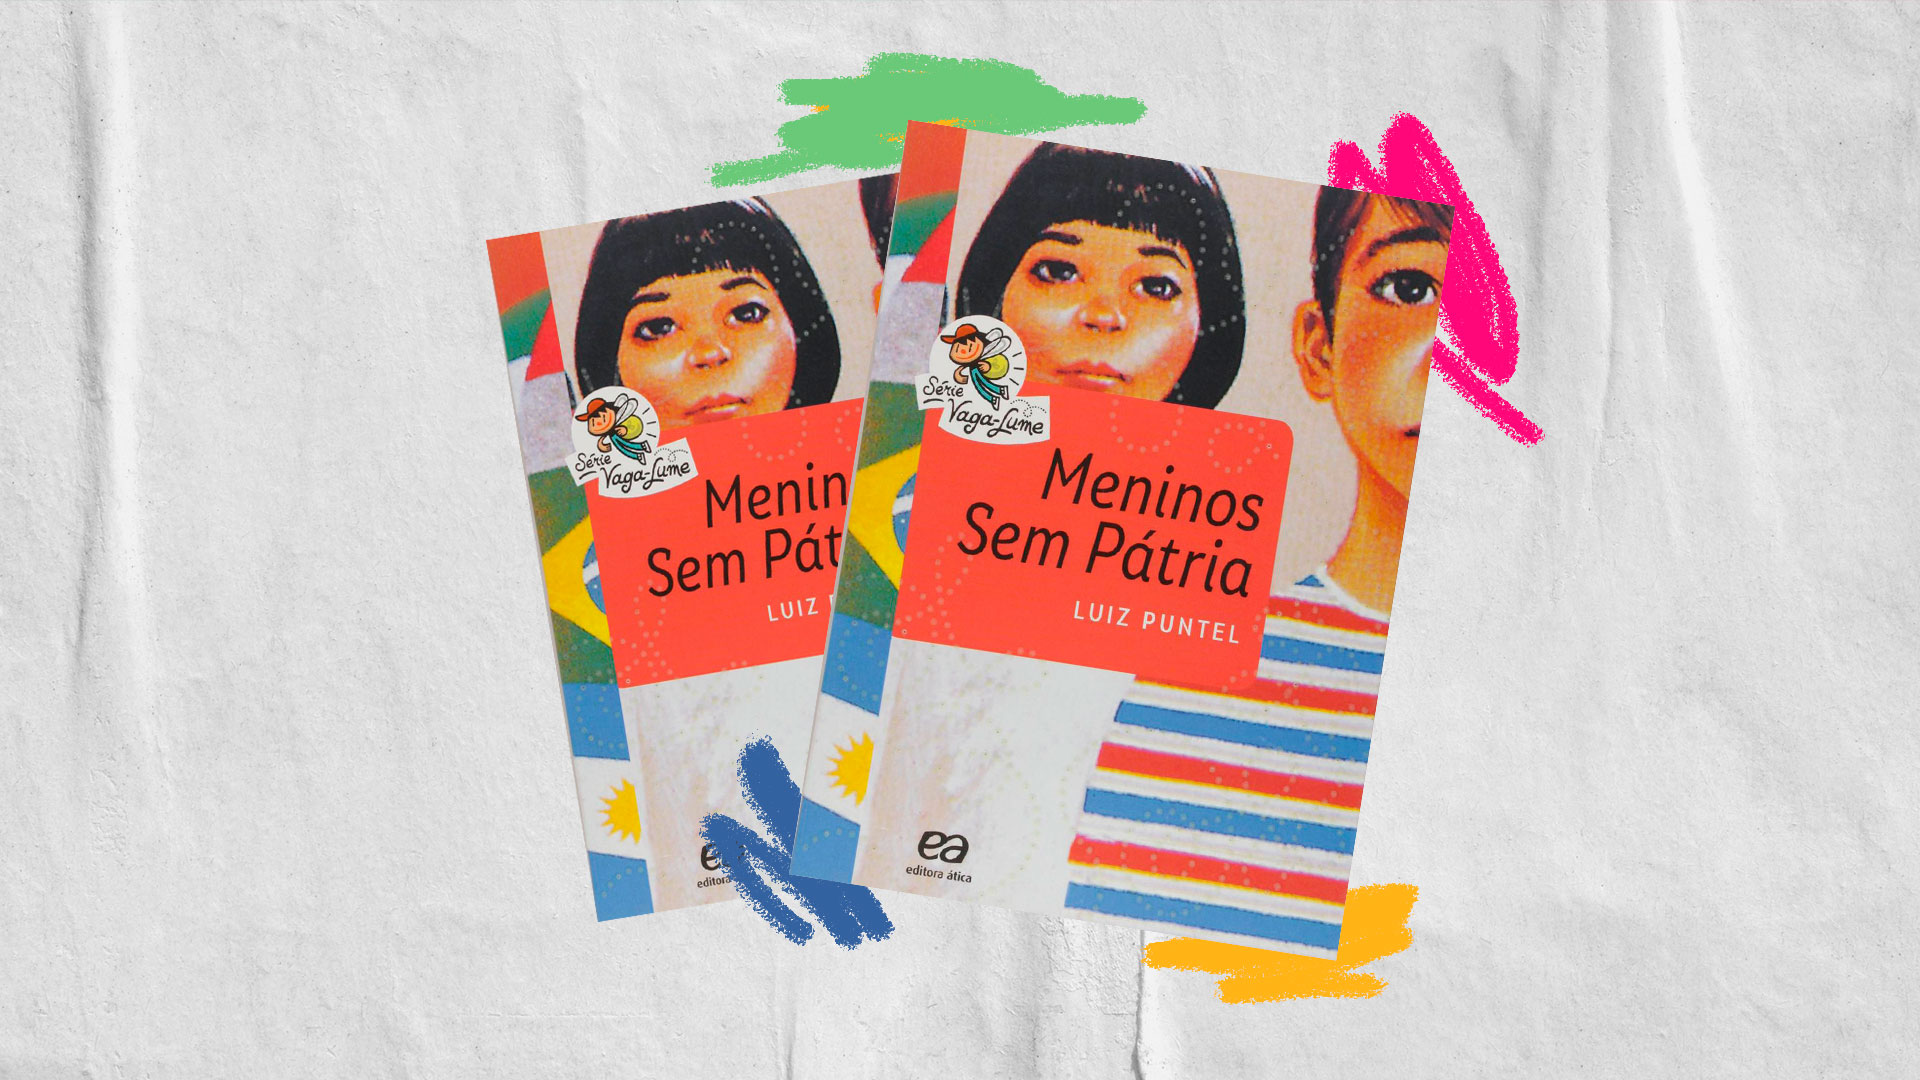 Capa do livro "Meninos sem pátria", sobre um fundo branco com grafismos coloridos amarelos, verdes, azuis e cor-de-rosas